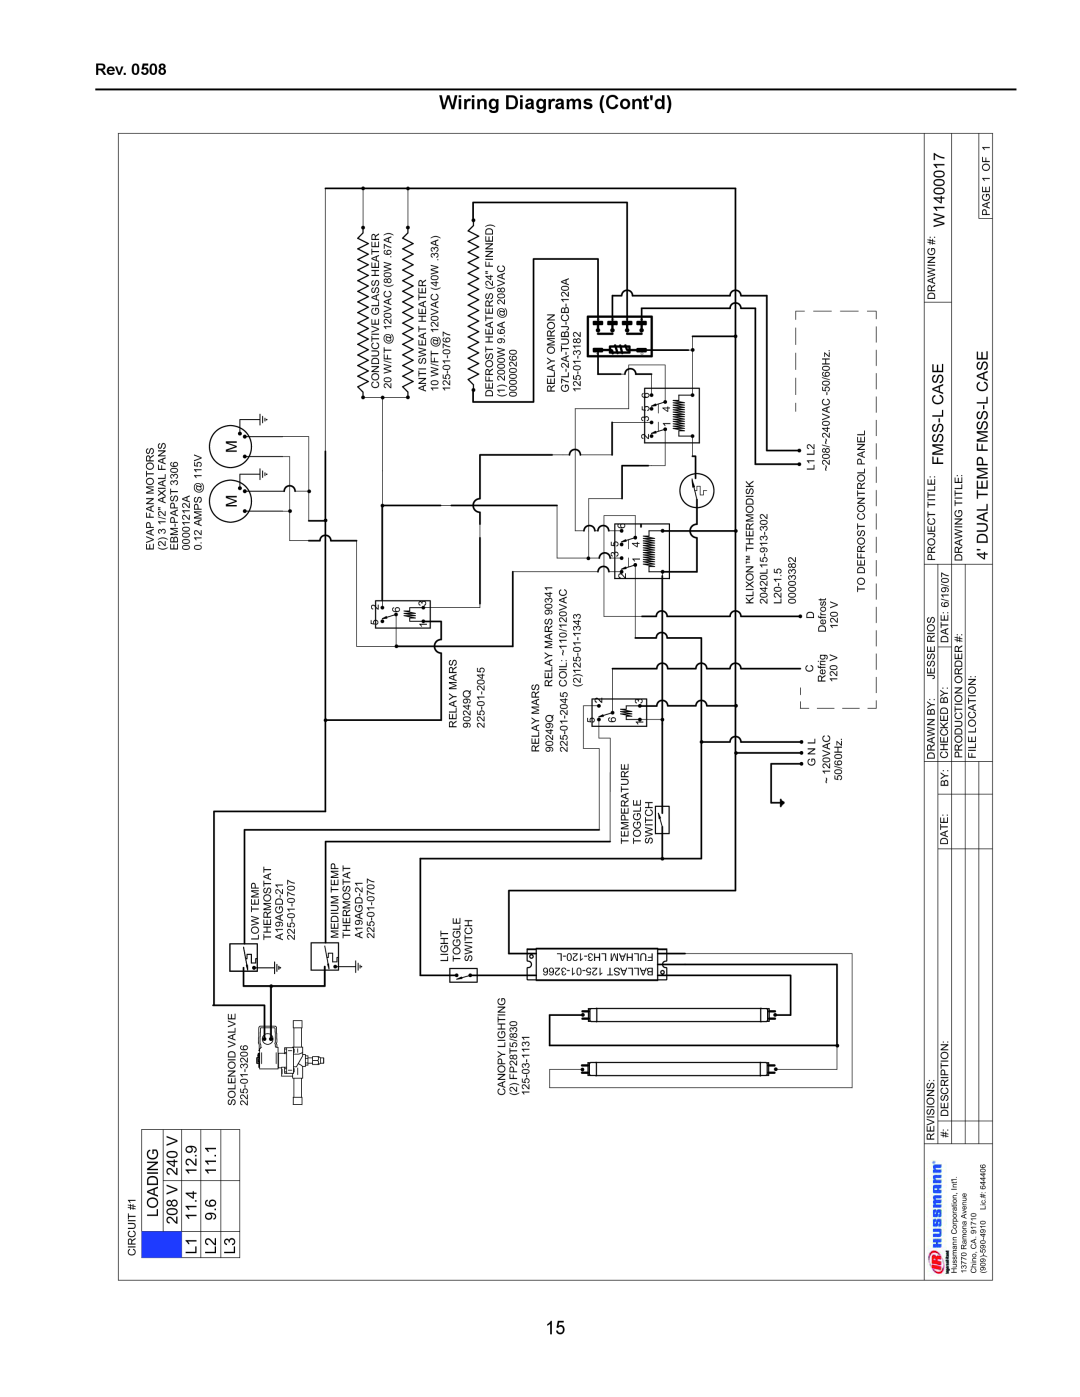 hussman FMSS-L operation manual Wiring Diagrams Contd, LOADING 208 V 240 L1 11.4 L2 9.6 L3, Dual Temp Fmss-L Case 